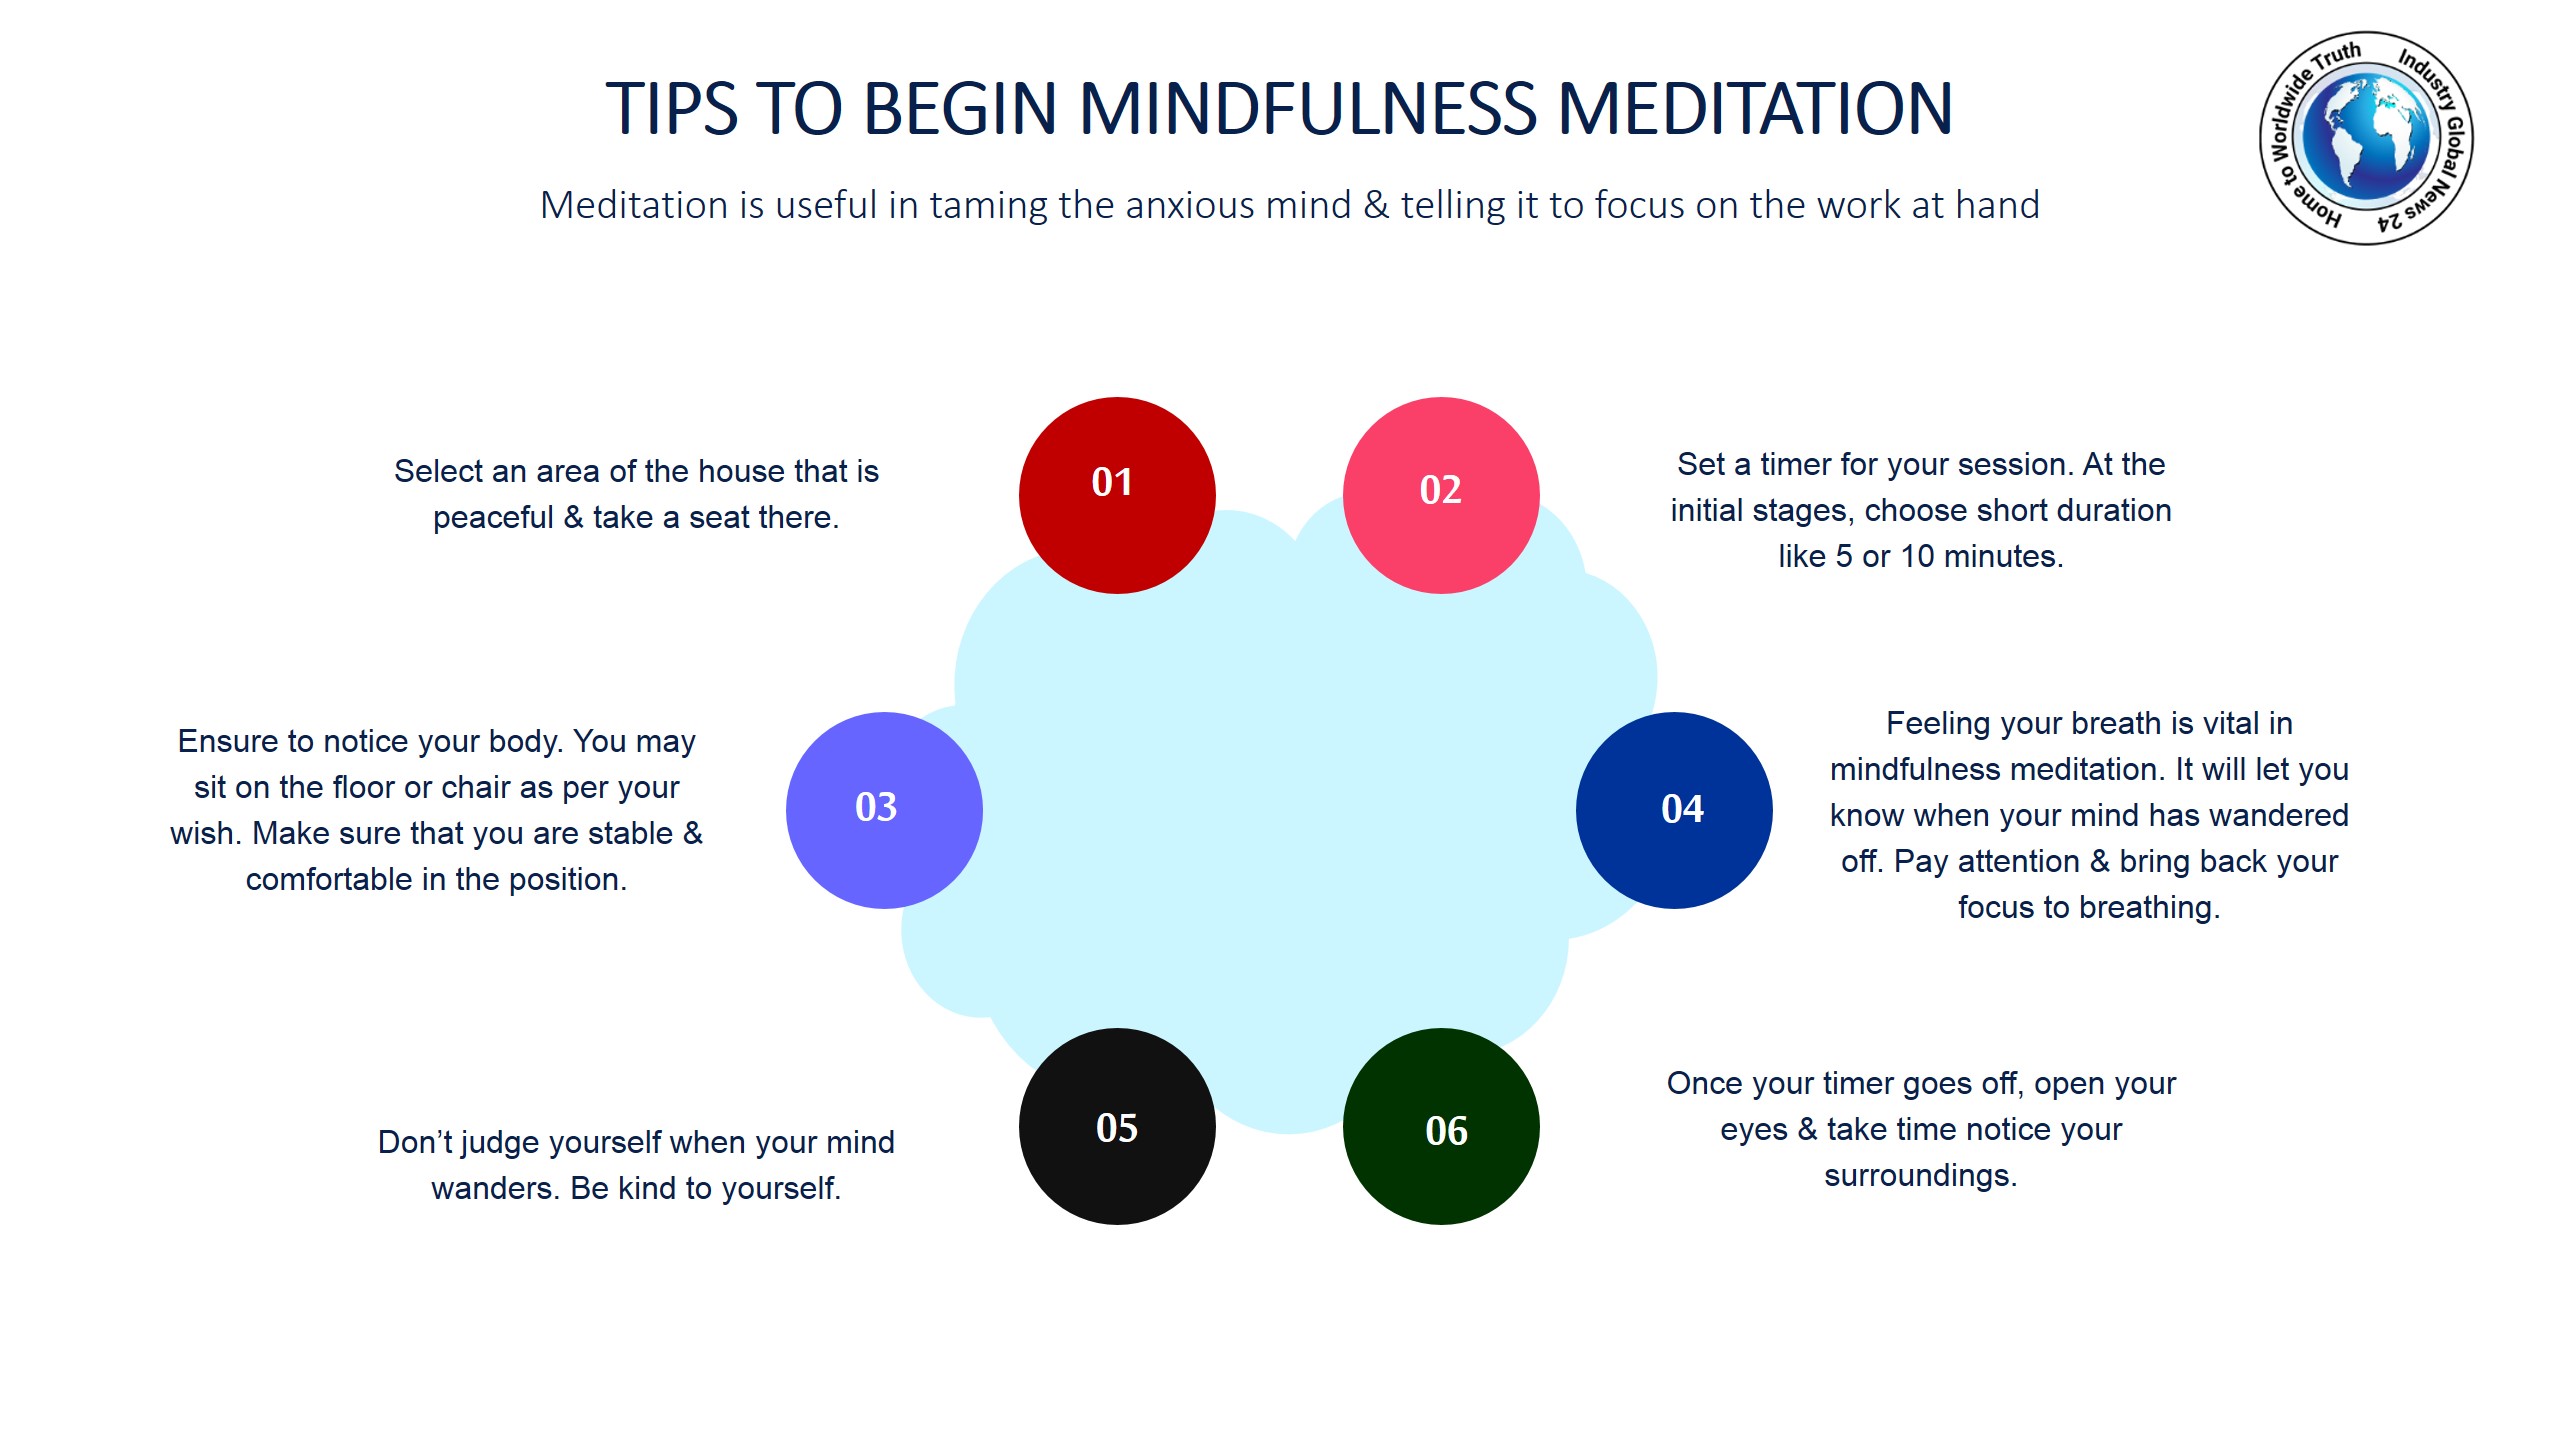 Tips to begin mindfulness meditation